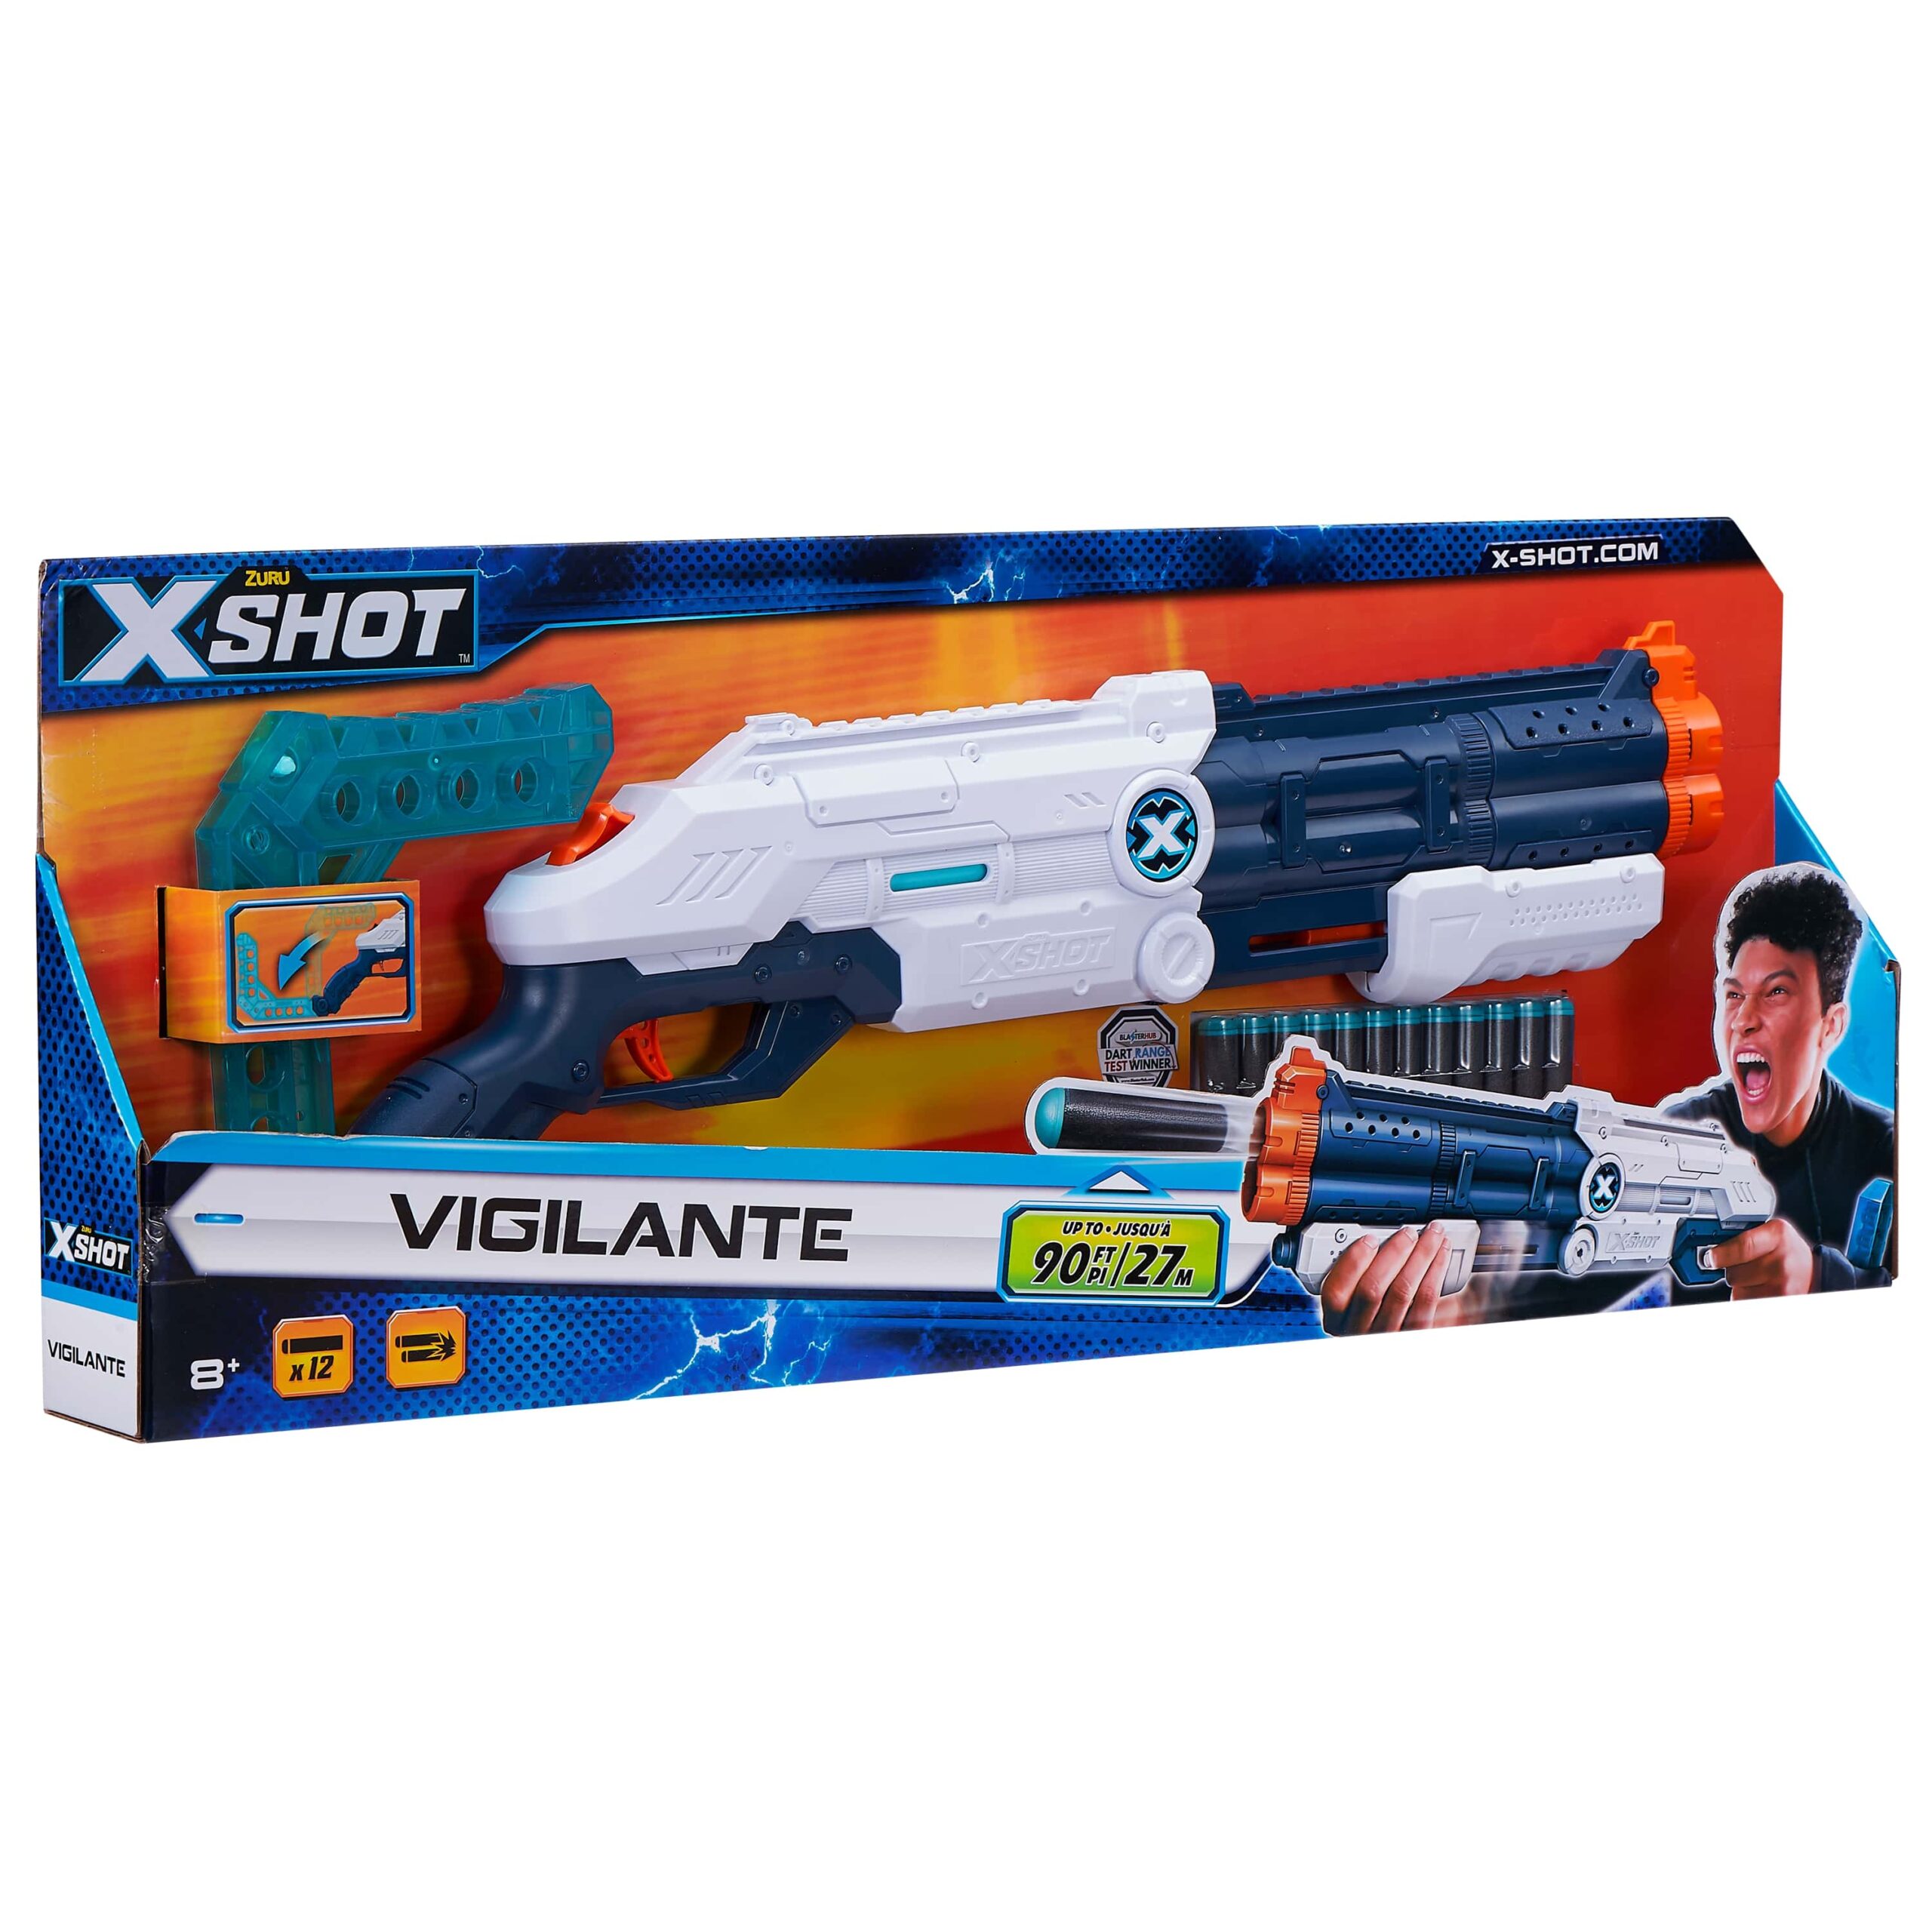 X shot vigilante - X-SHOT